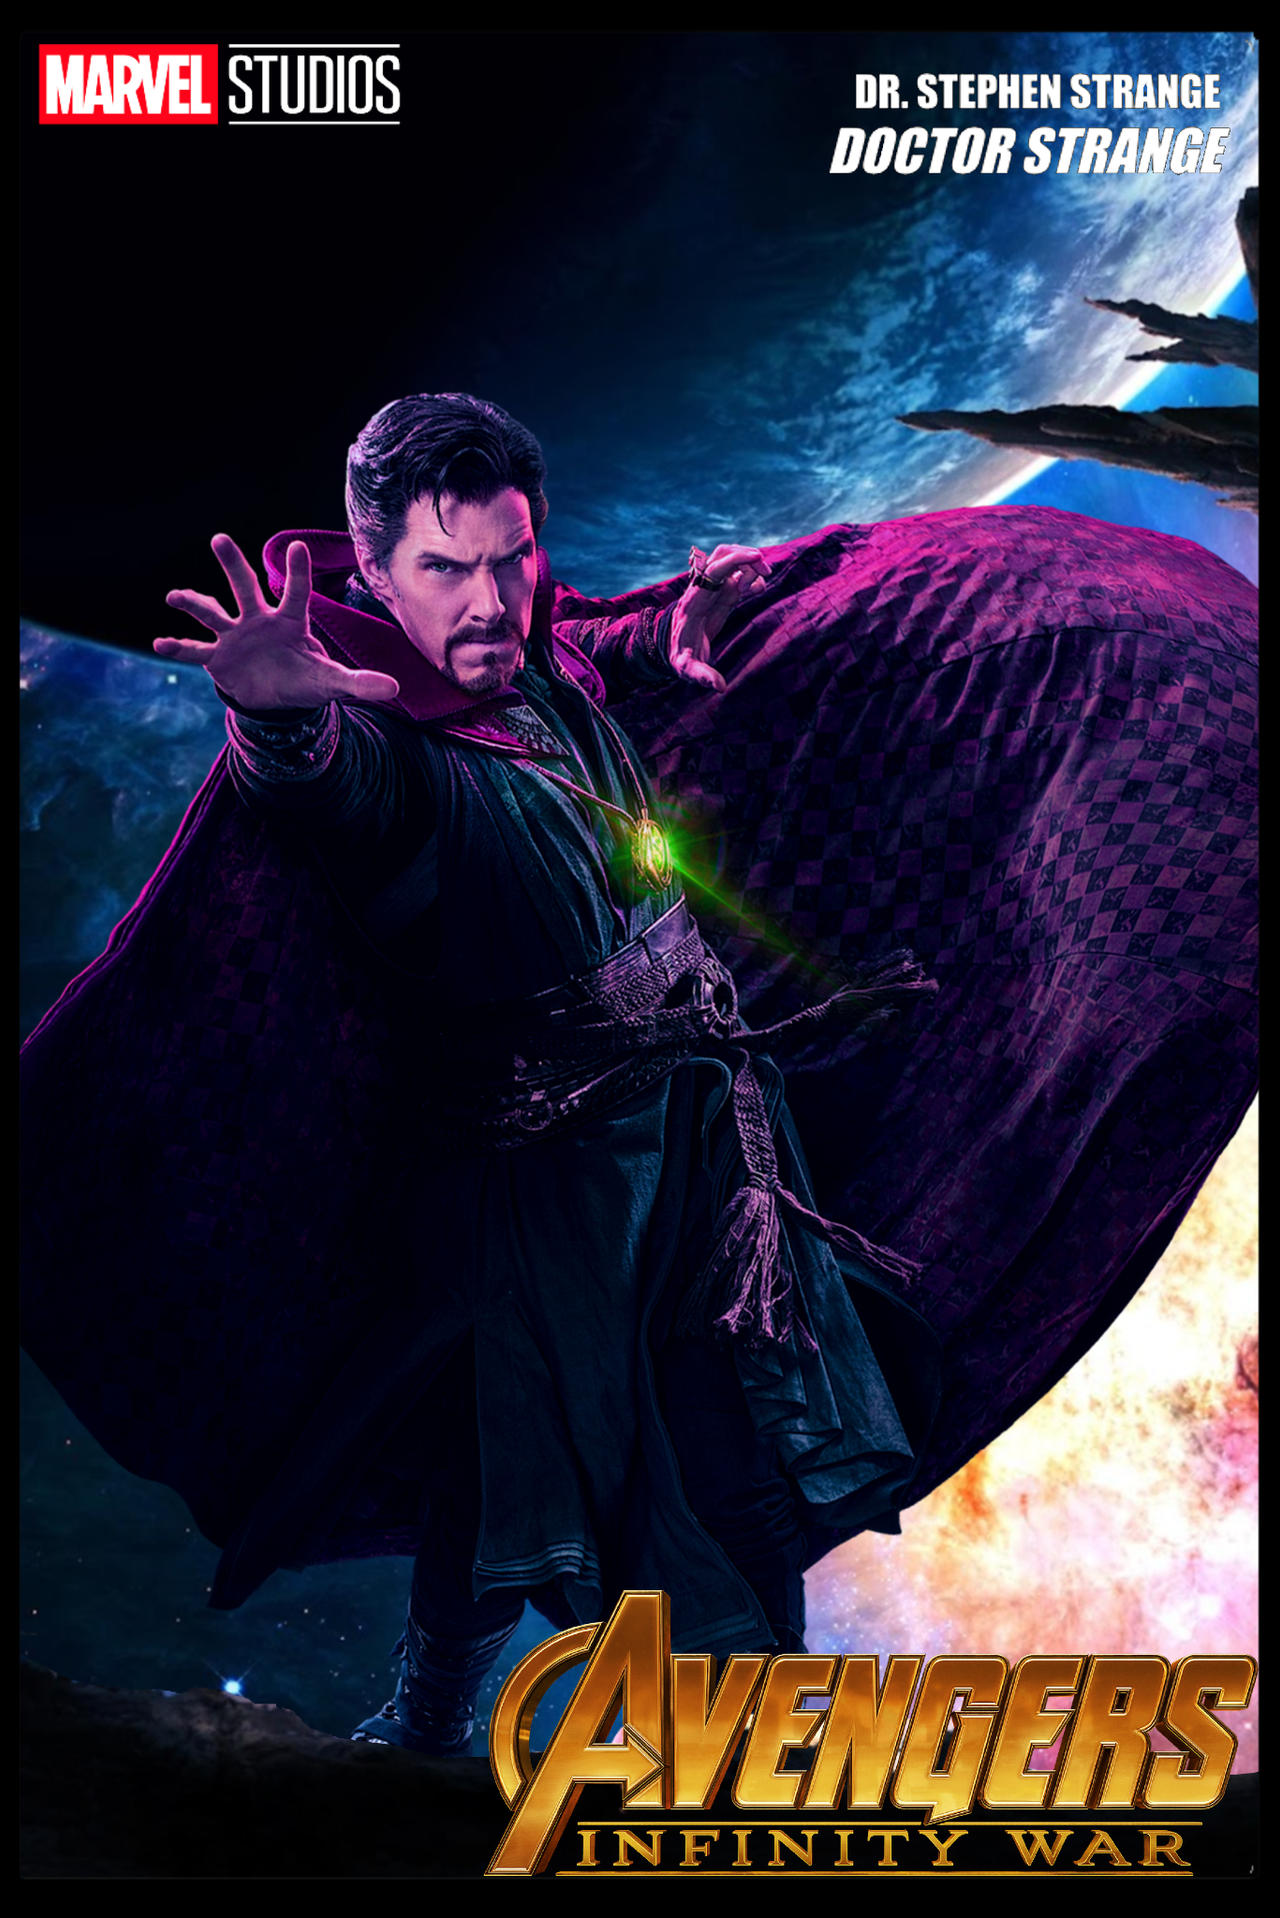 Avengers Secret Invasion Marvel Poster 2 by bertzee on DeviantArt